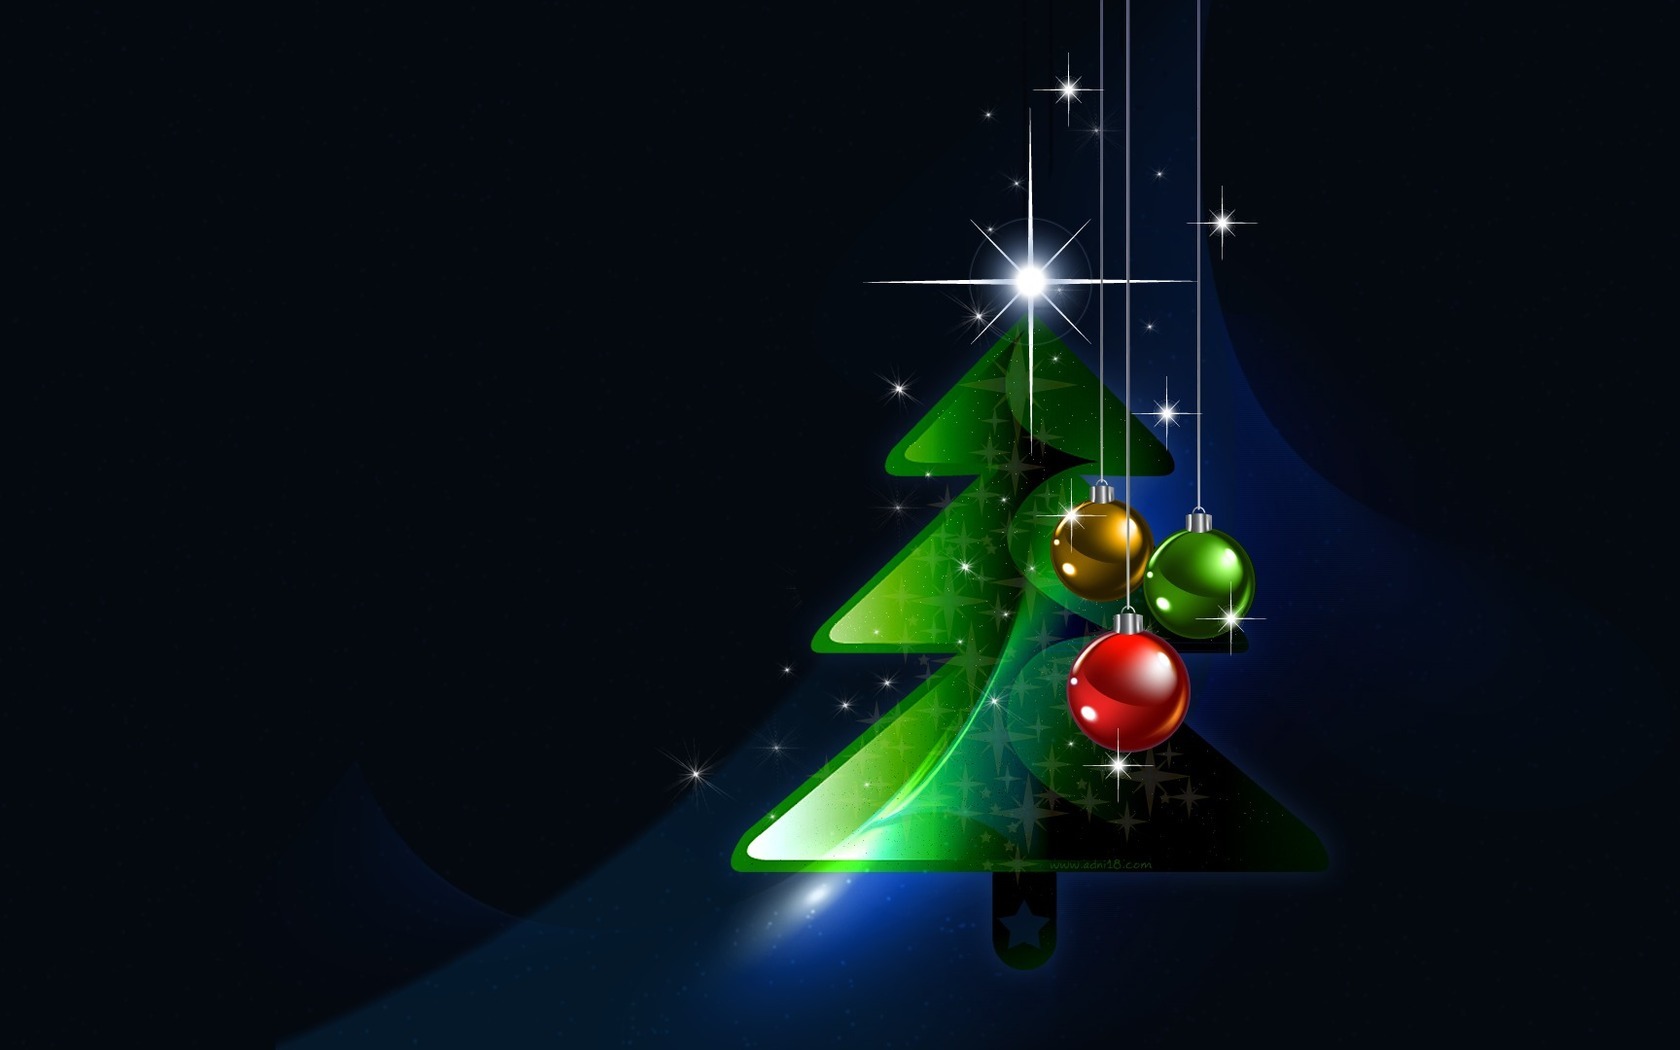 Скачать обои бесплатно Рождество (Christmas Xmas), Новый Год (New Year), Праздники, Фон картинка на рабочий стол ПК